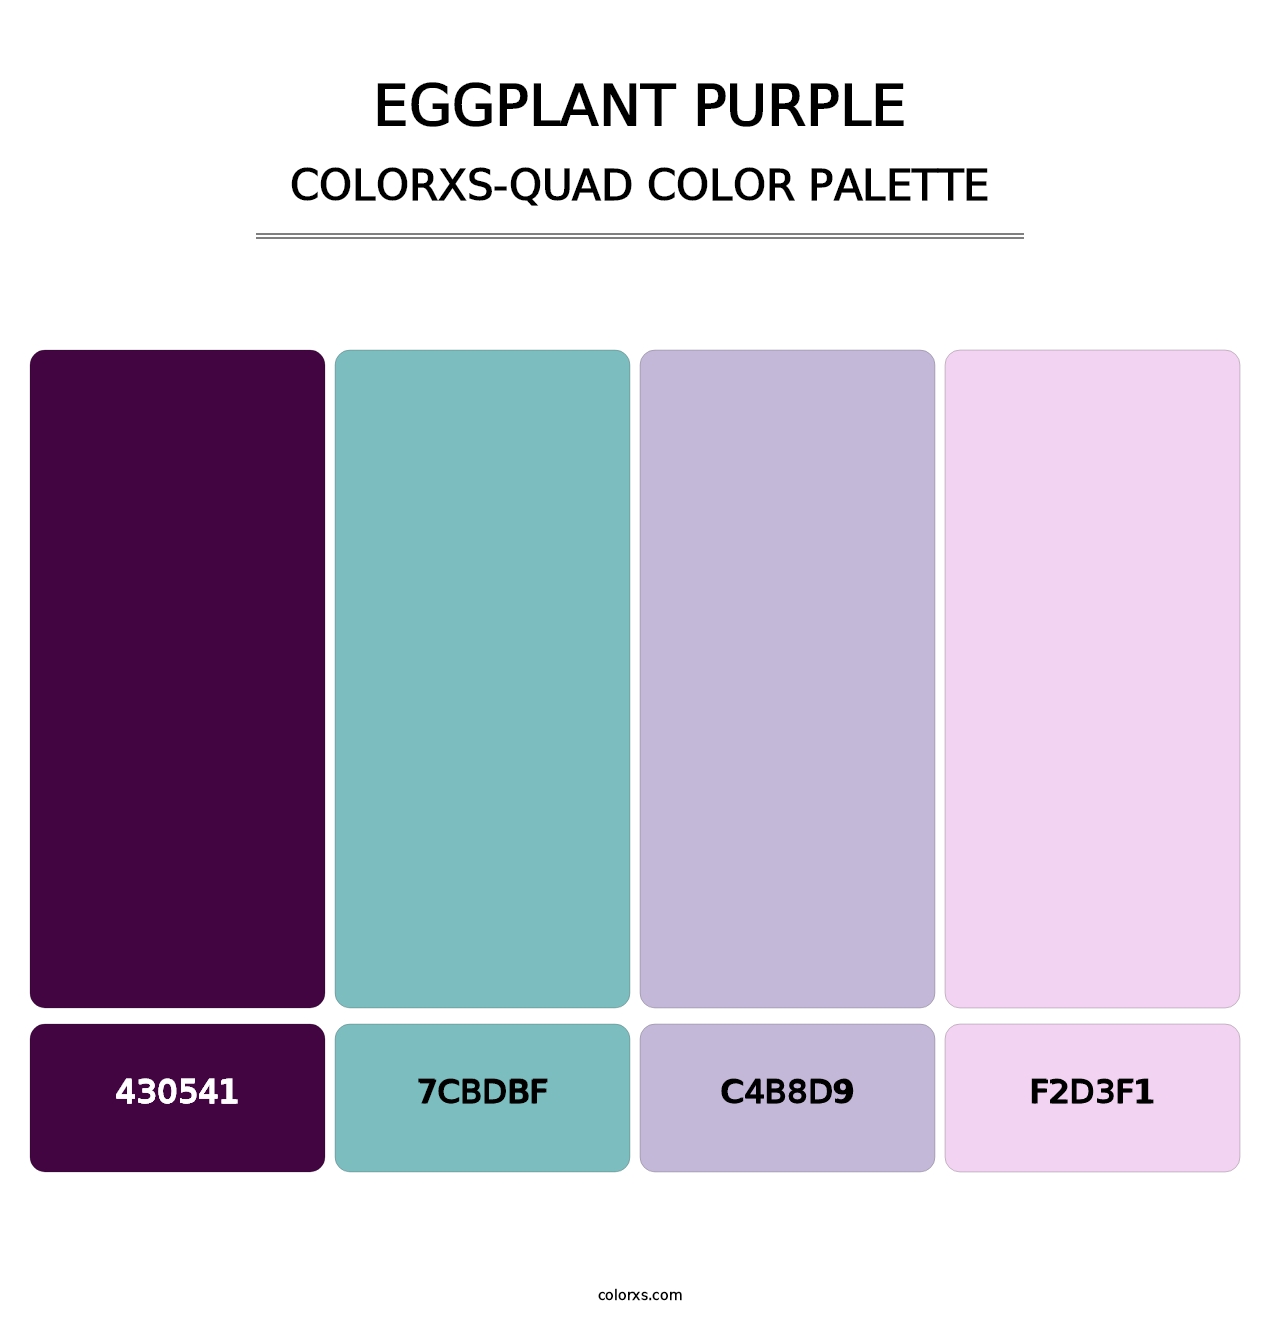 Eggplant Purple - Colorxs Quad Palette